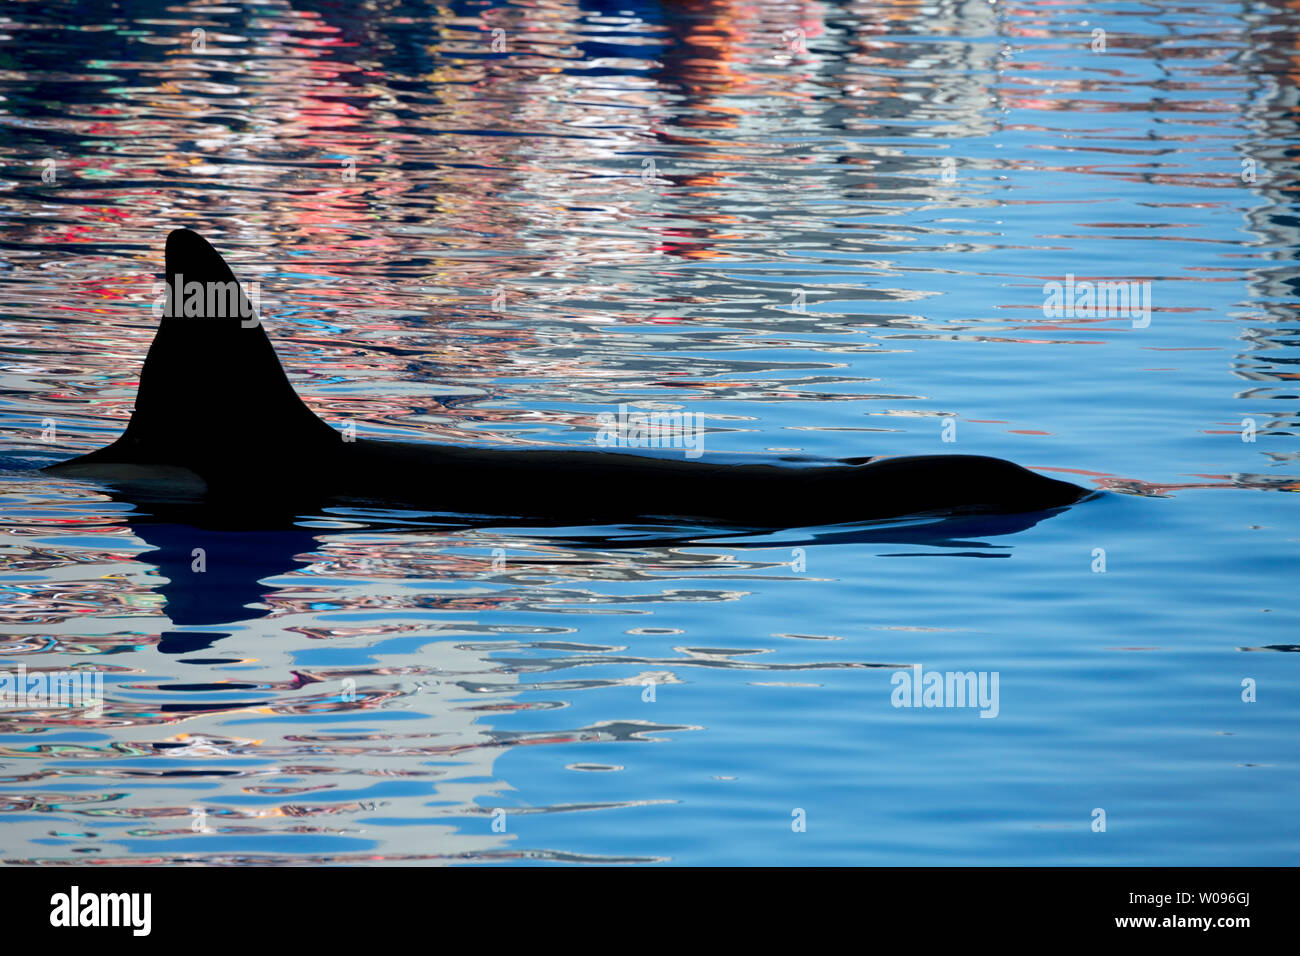 La vista de una ballena asesina, Orcinus orca, sobre una tranquila superficie con reflexiones, Islas Canarias, España. Foto de stock